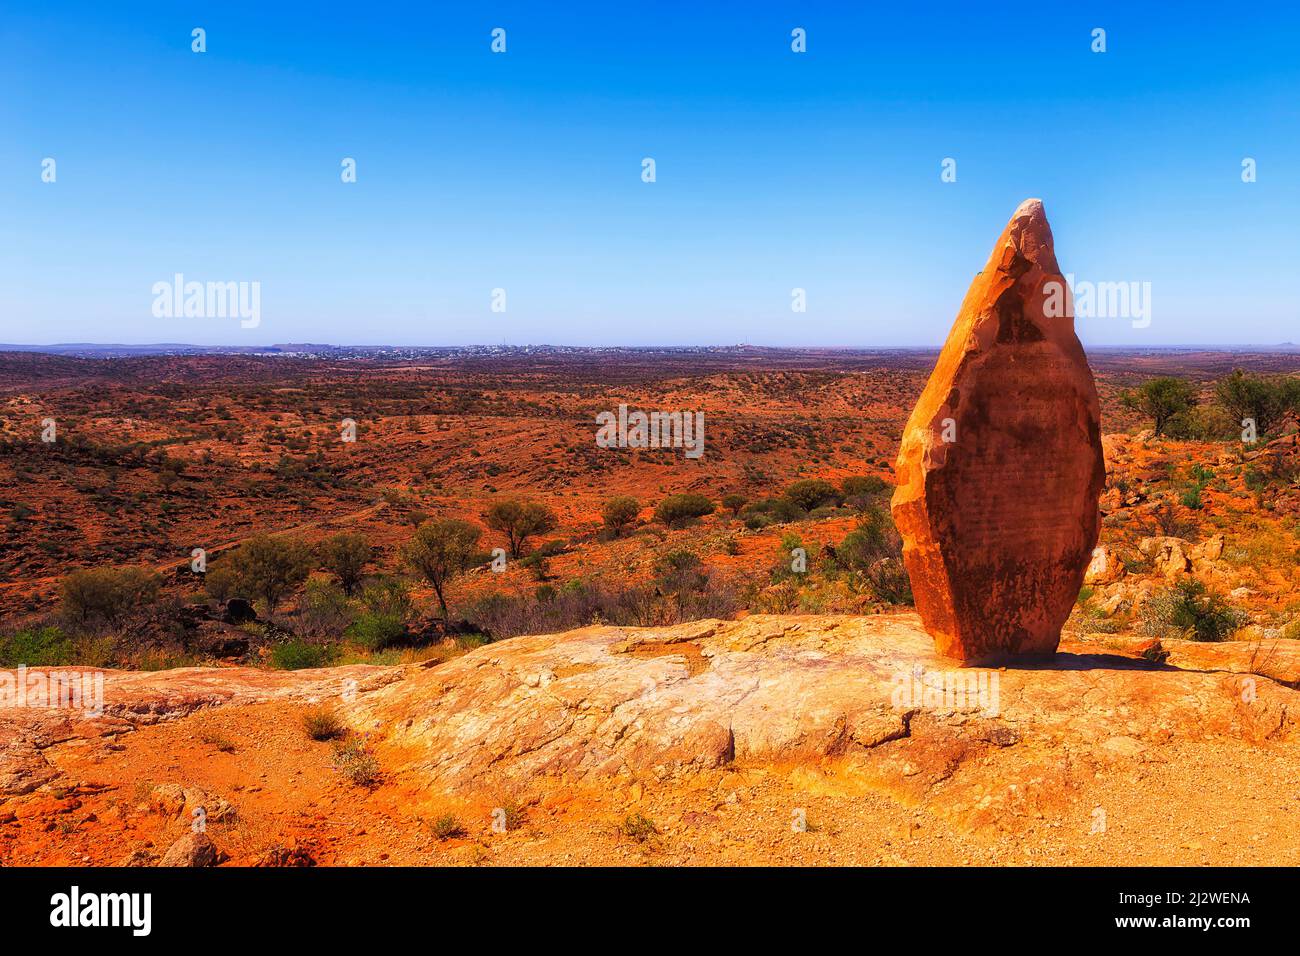 Skyline der entfernten Stadt Broken Hill im australischen Outback, halbiert von der Höhe des öffentlichen Skulpturengartens. Stockfoto